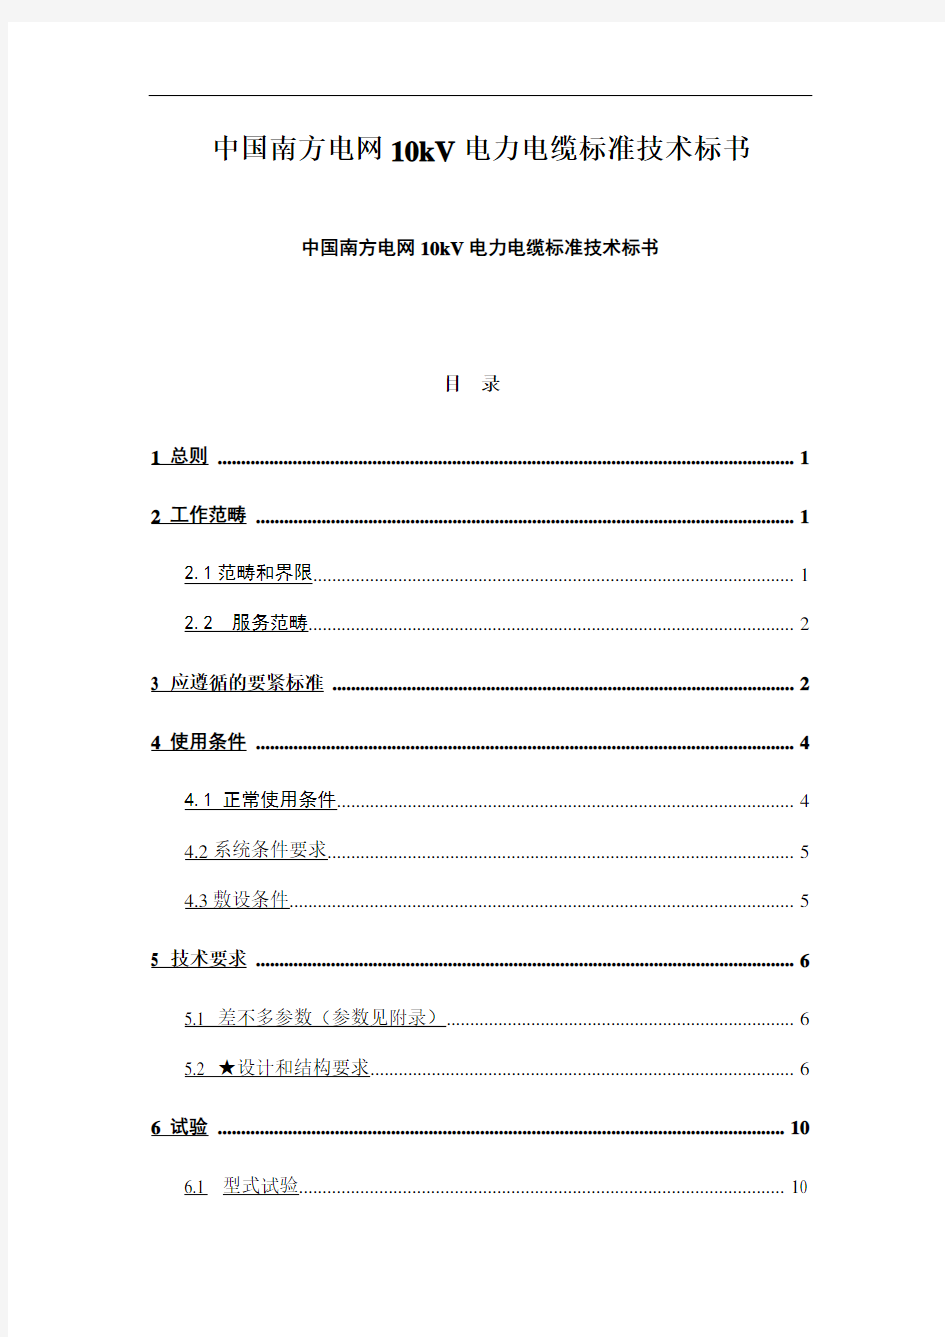 中国南方电网10kV电力电缆标准技术标书